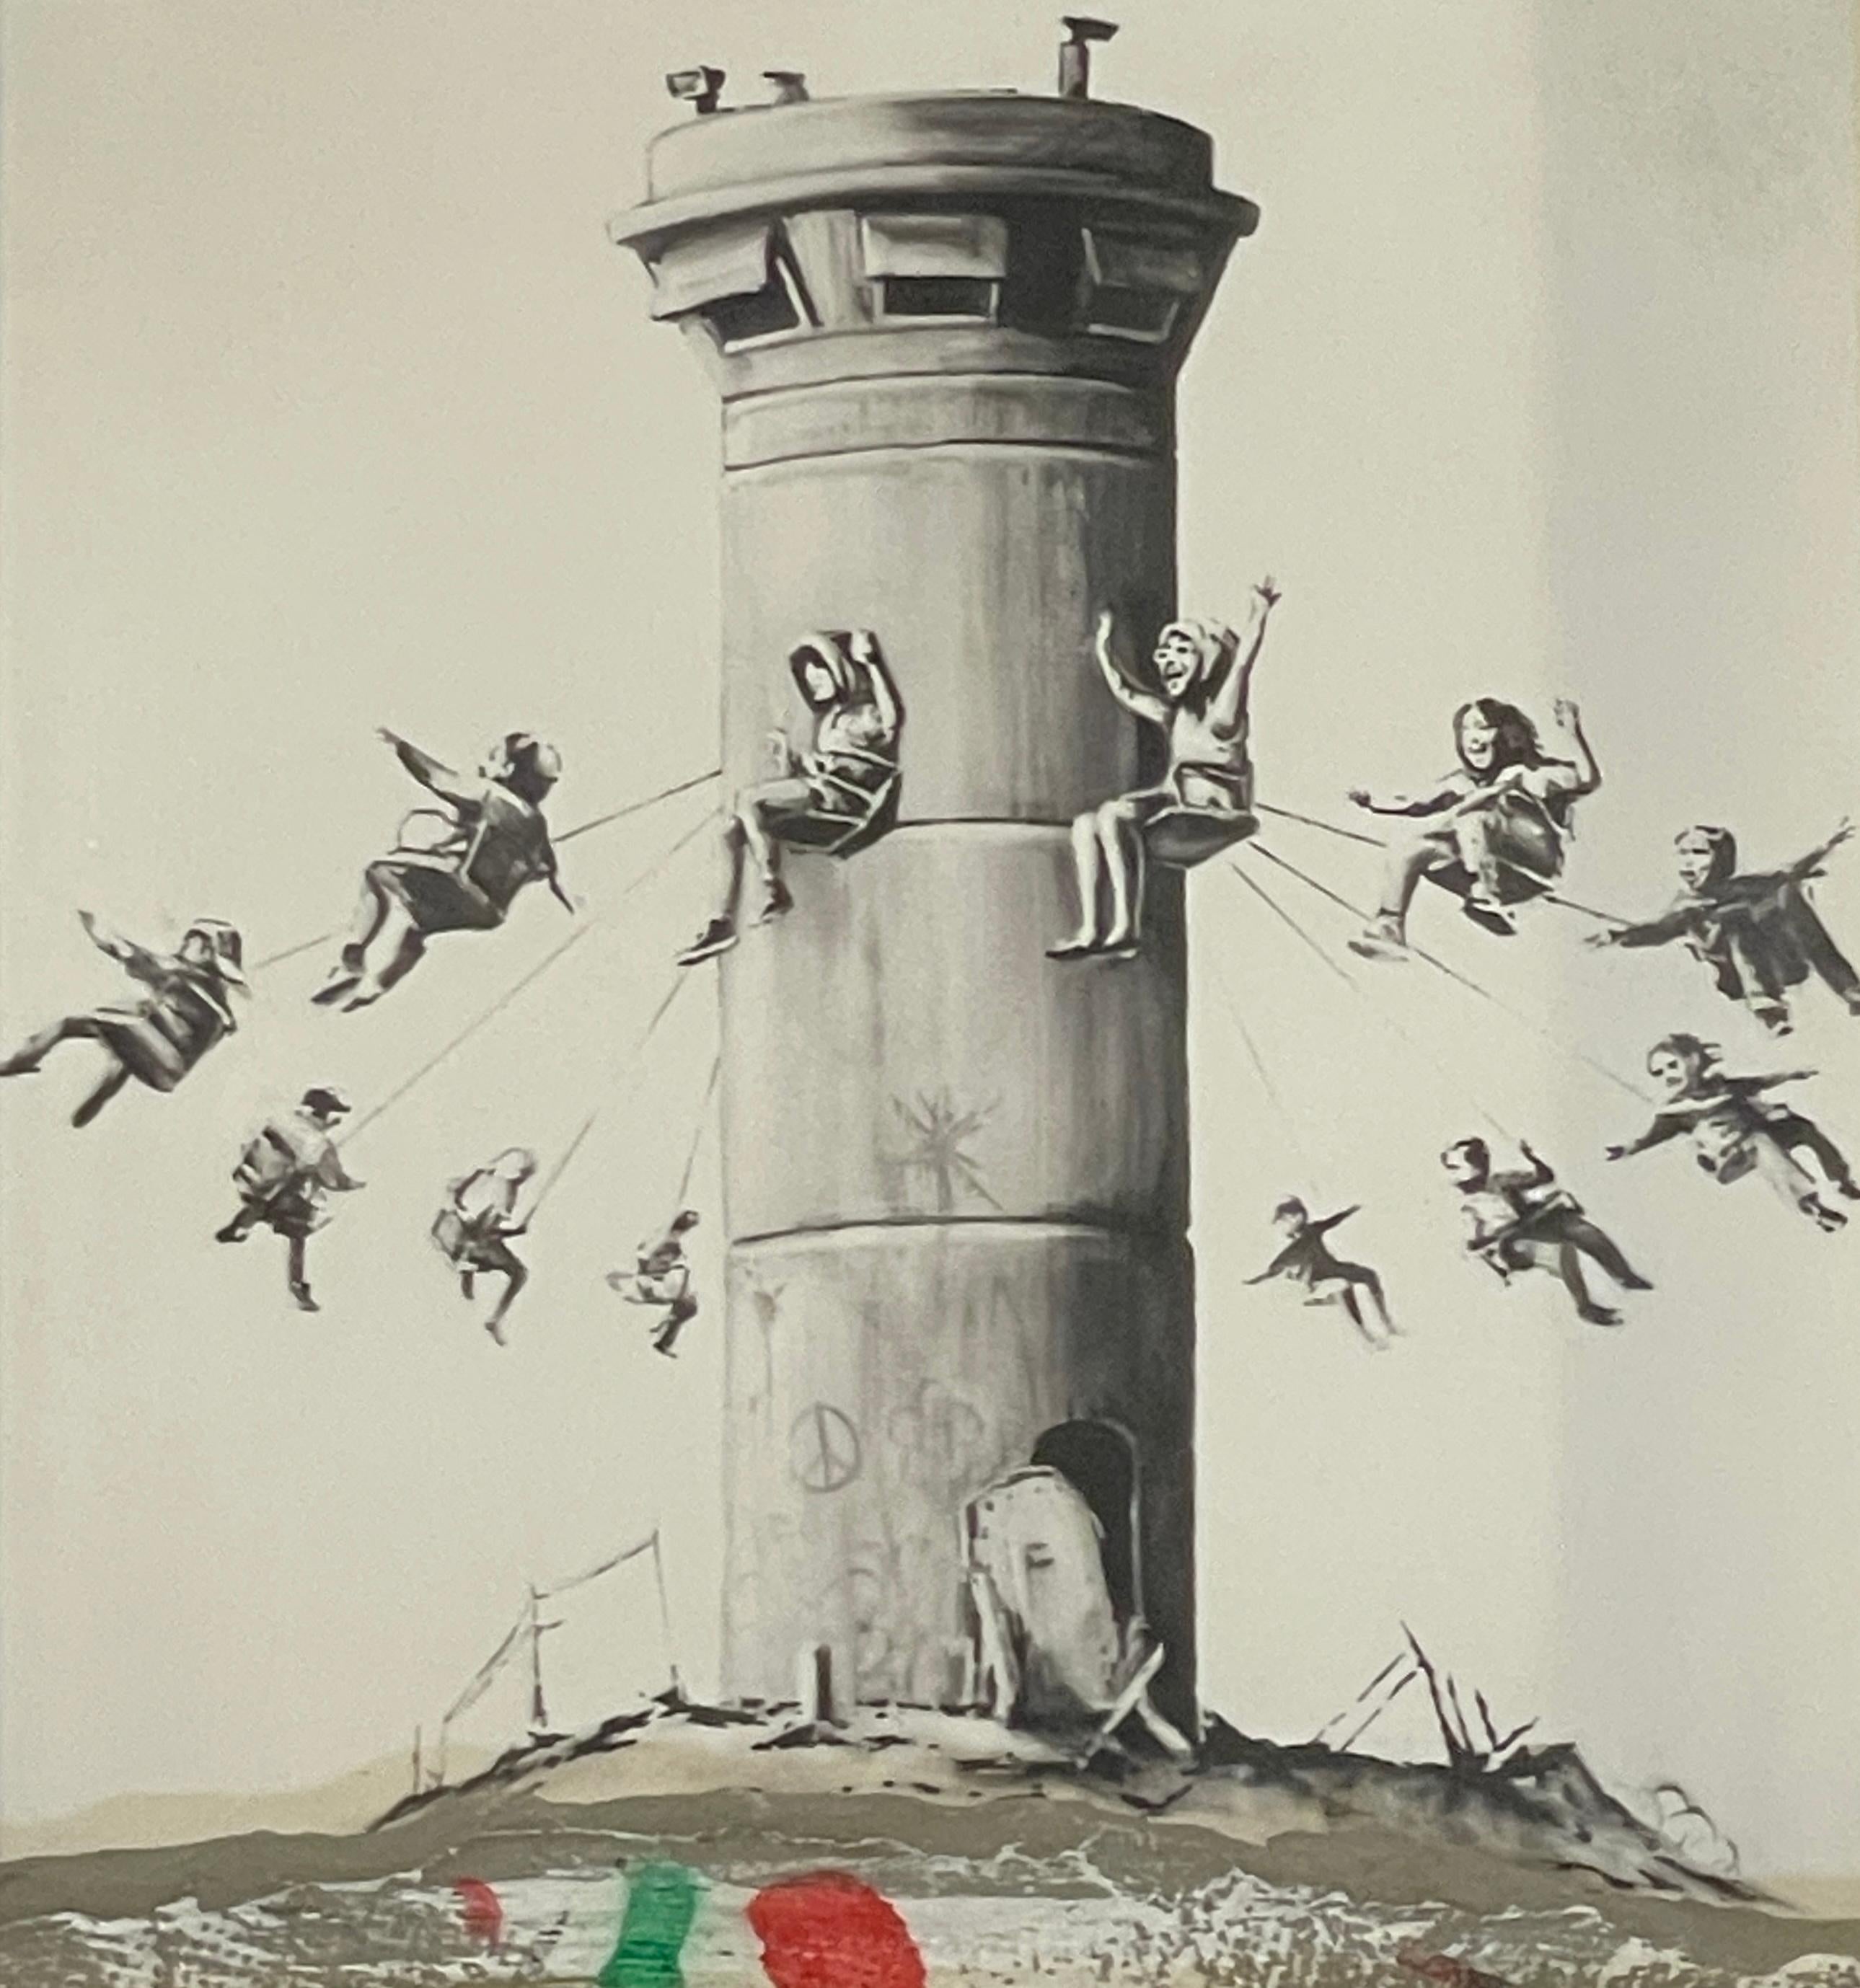 Banksy, die vielleicht berühmteste Figur der heutigen Straßenkunst, ist bekannt für urbane Interventionen mit respektlosem Witz und bissiger politischer Schärfe. Der Künstler hat Straßenschilder verändert, illegal seine eigene Währung gedruckt und